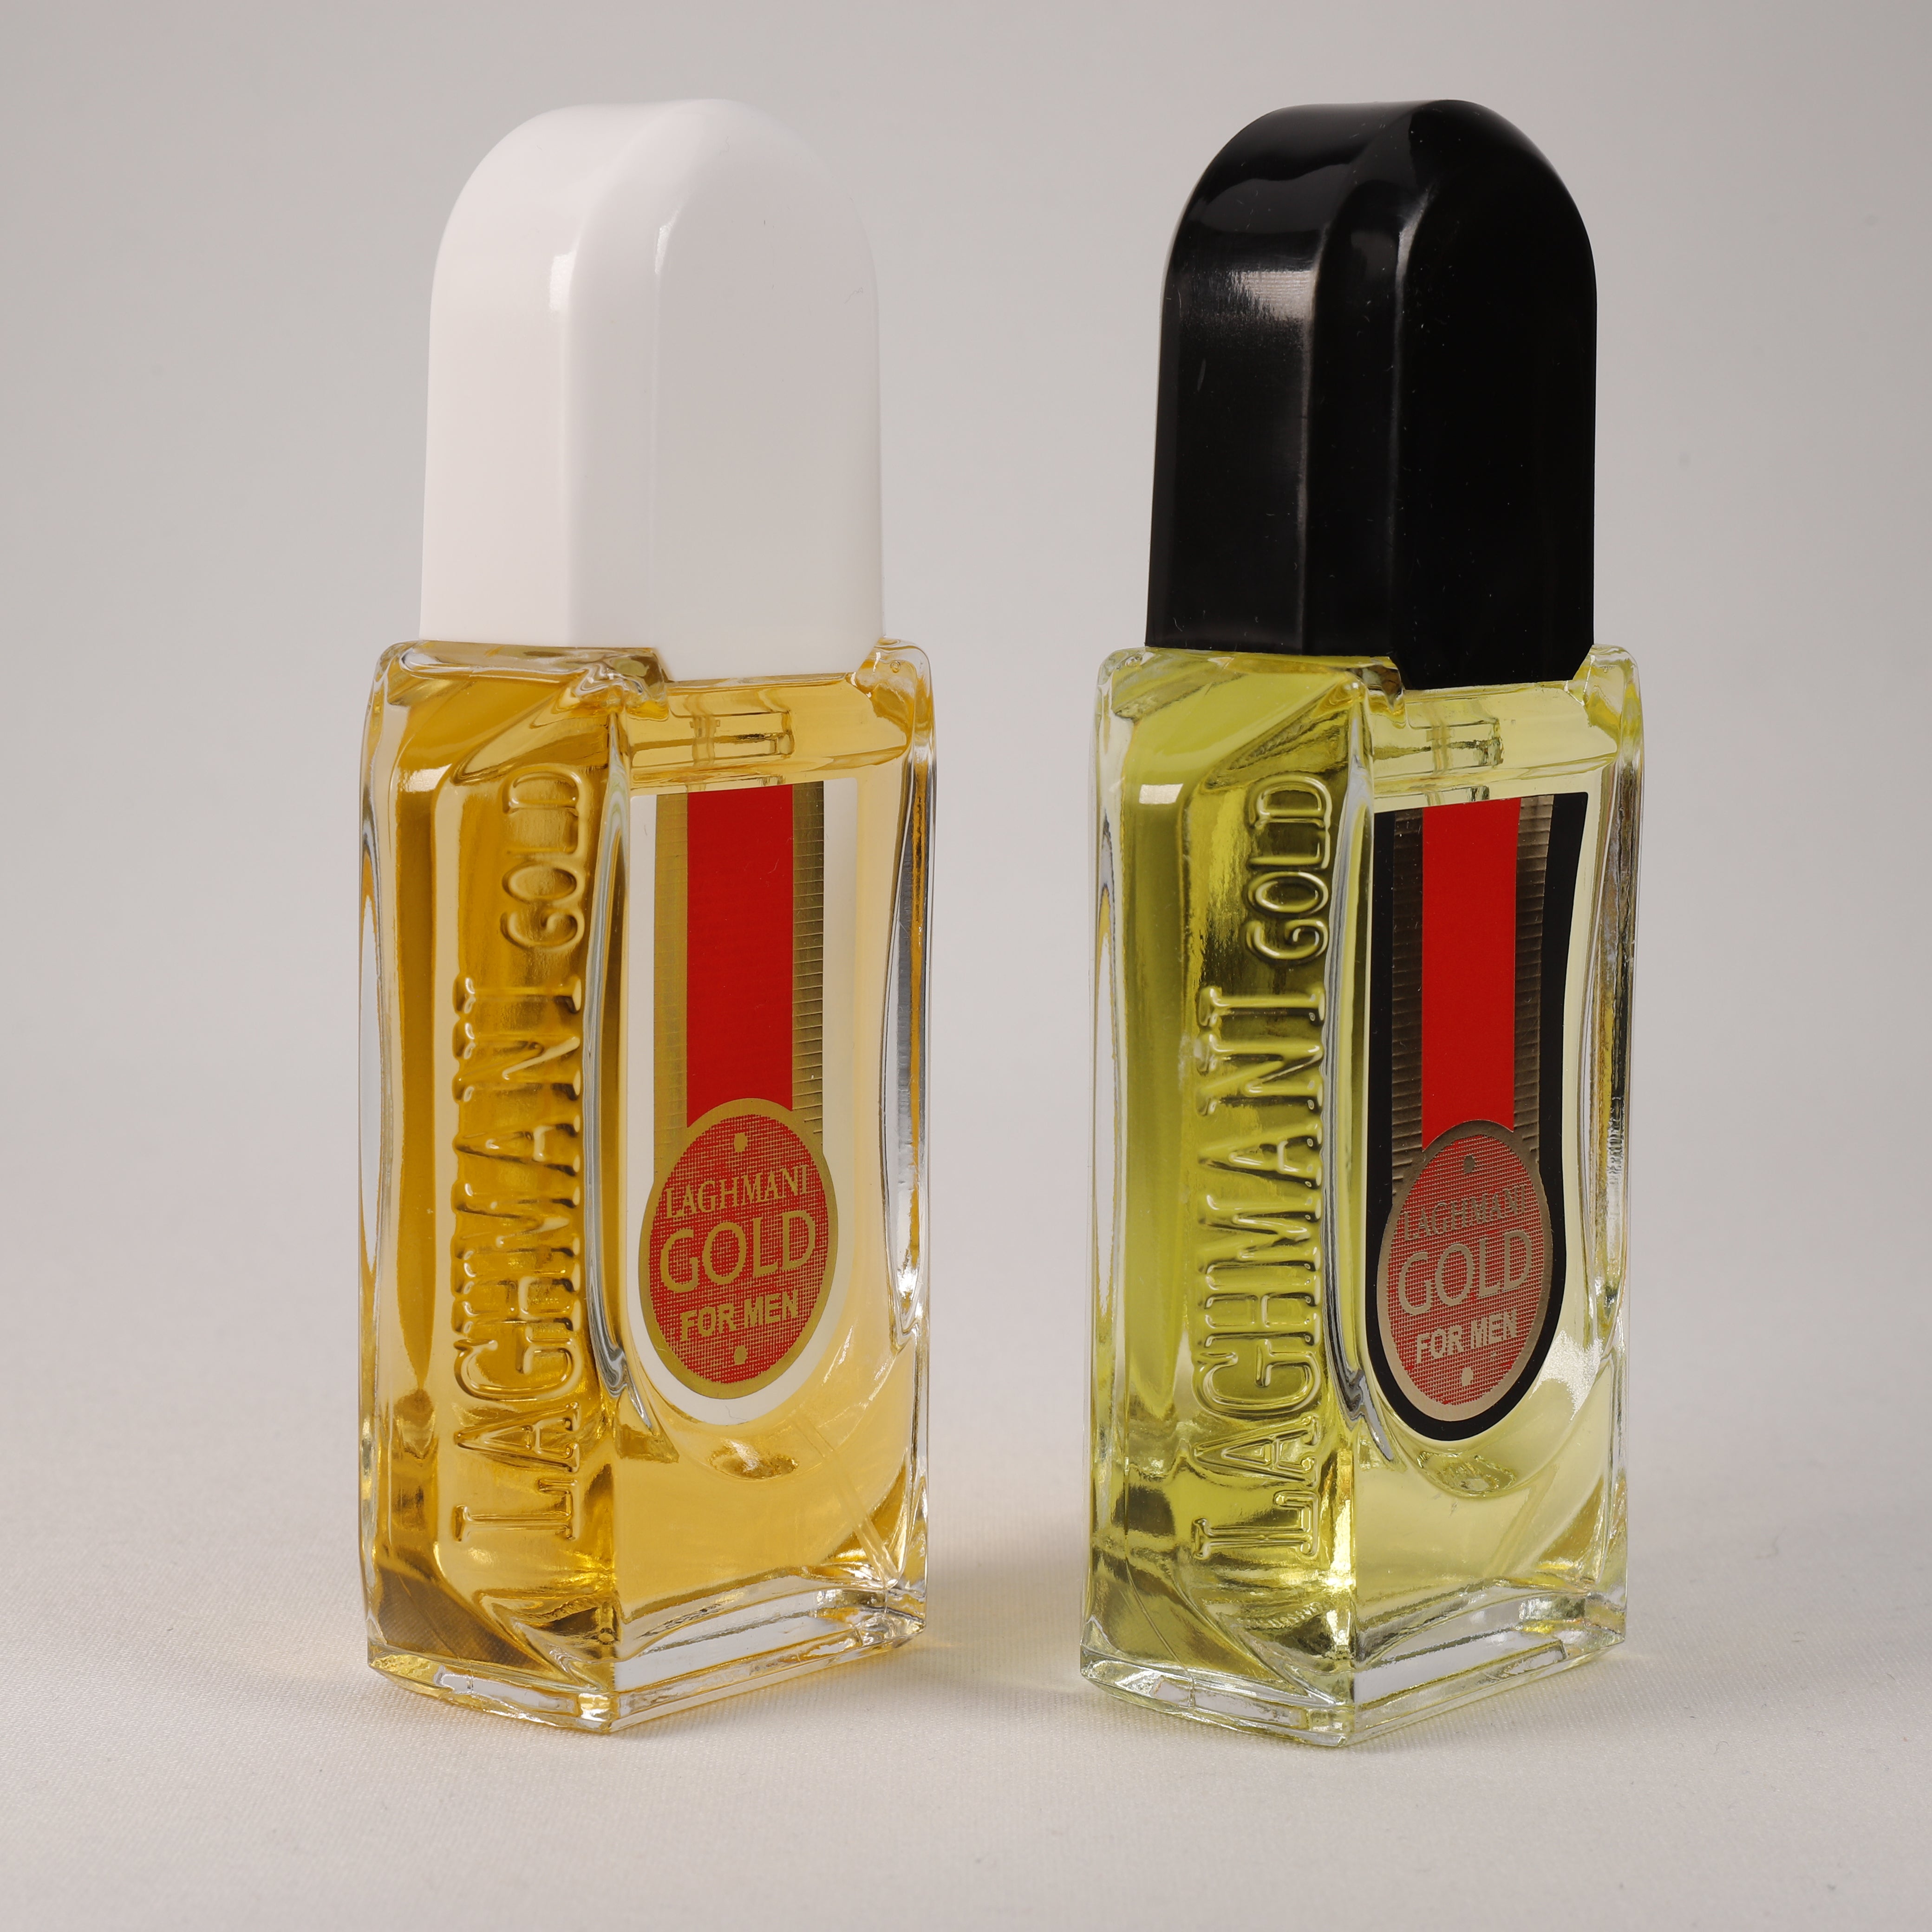 Laghmani Gold White für Herren, Vaporizer mit natürlichem Spray, 85 ml, Duft, Parfüm, NEU OVP